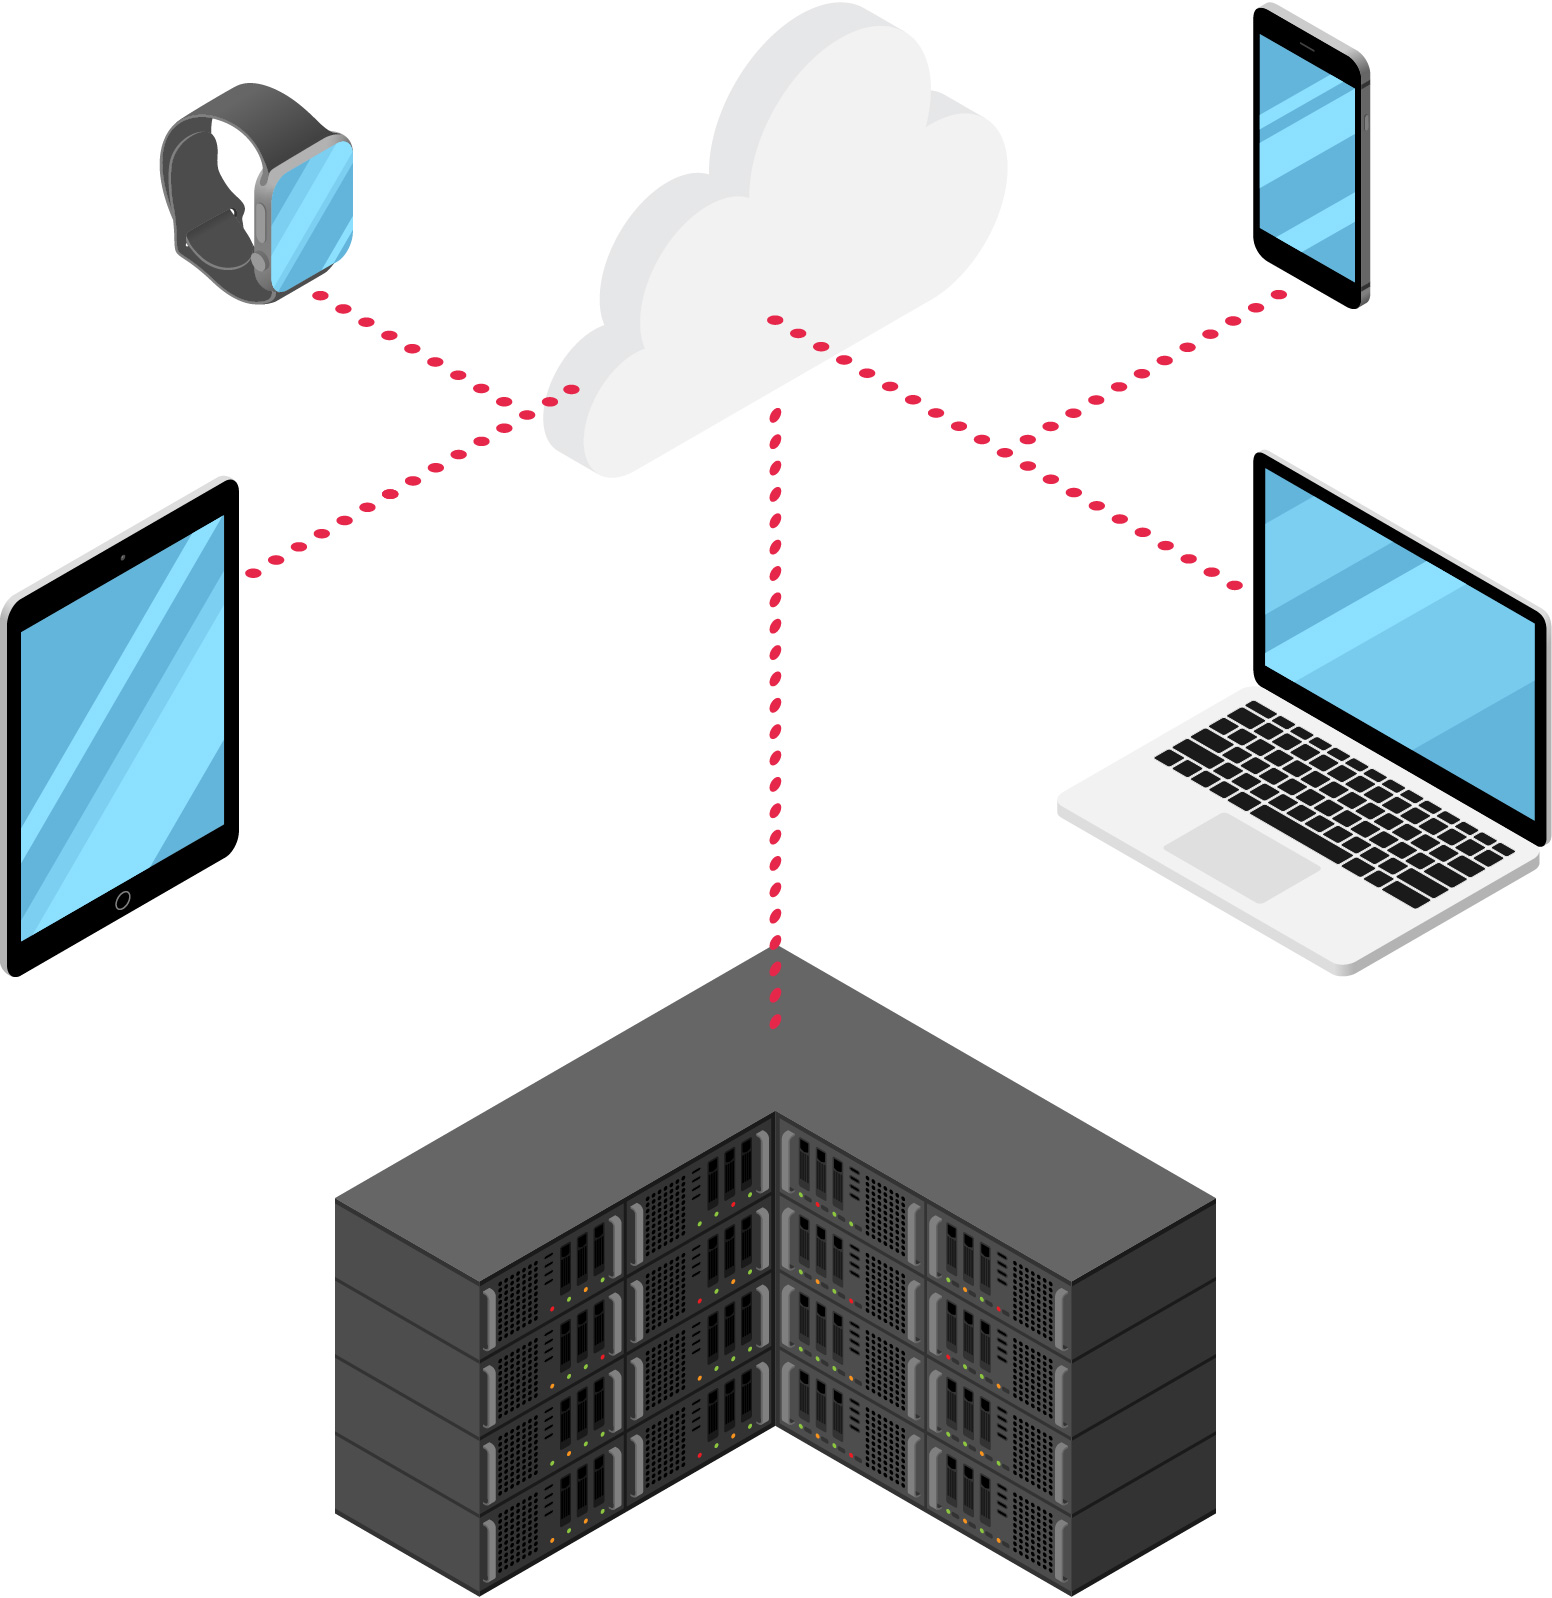 Darstellung verschiedener Geräte die über die Cloud miteinander vernetzt sind.